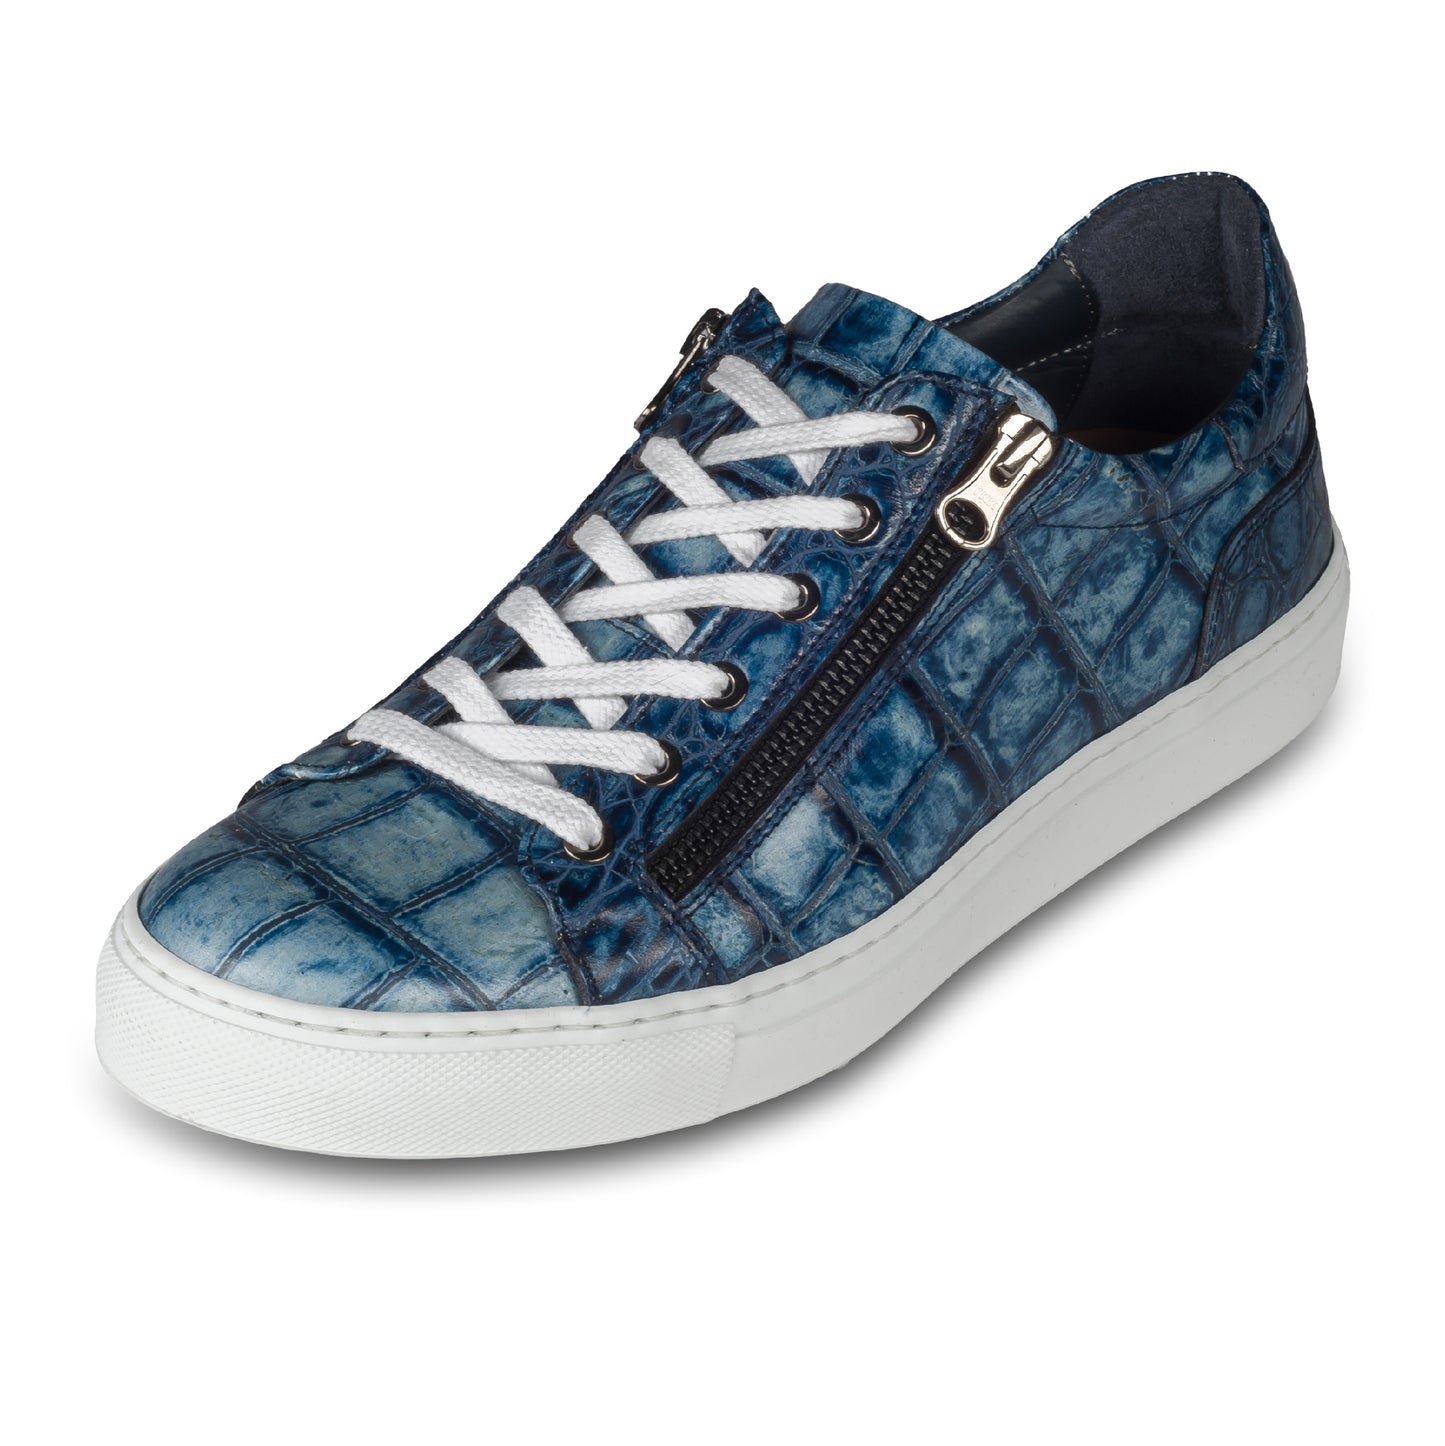 Lorenzi Italienische Herren Kalbsleder Sneaker in blau mit Kroko-Optik und weißer Sohle. Handgefertigt. Schräge Ansicht linker Schuh.